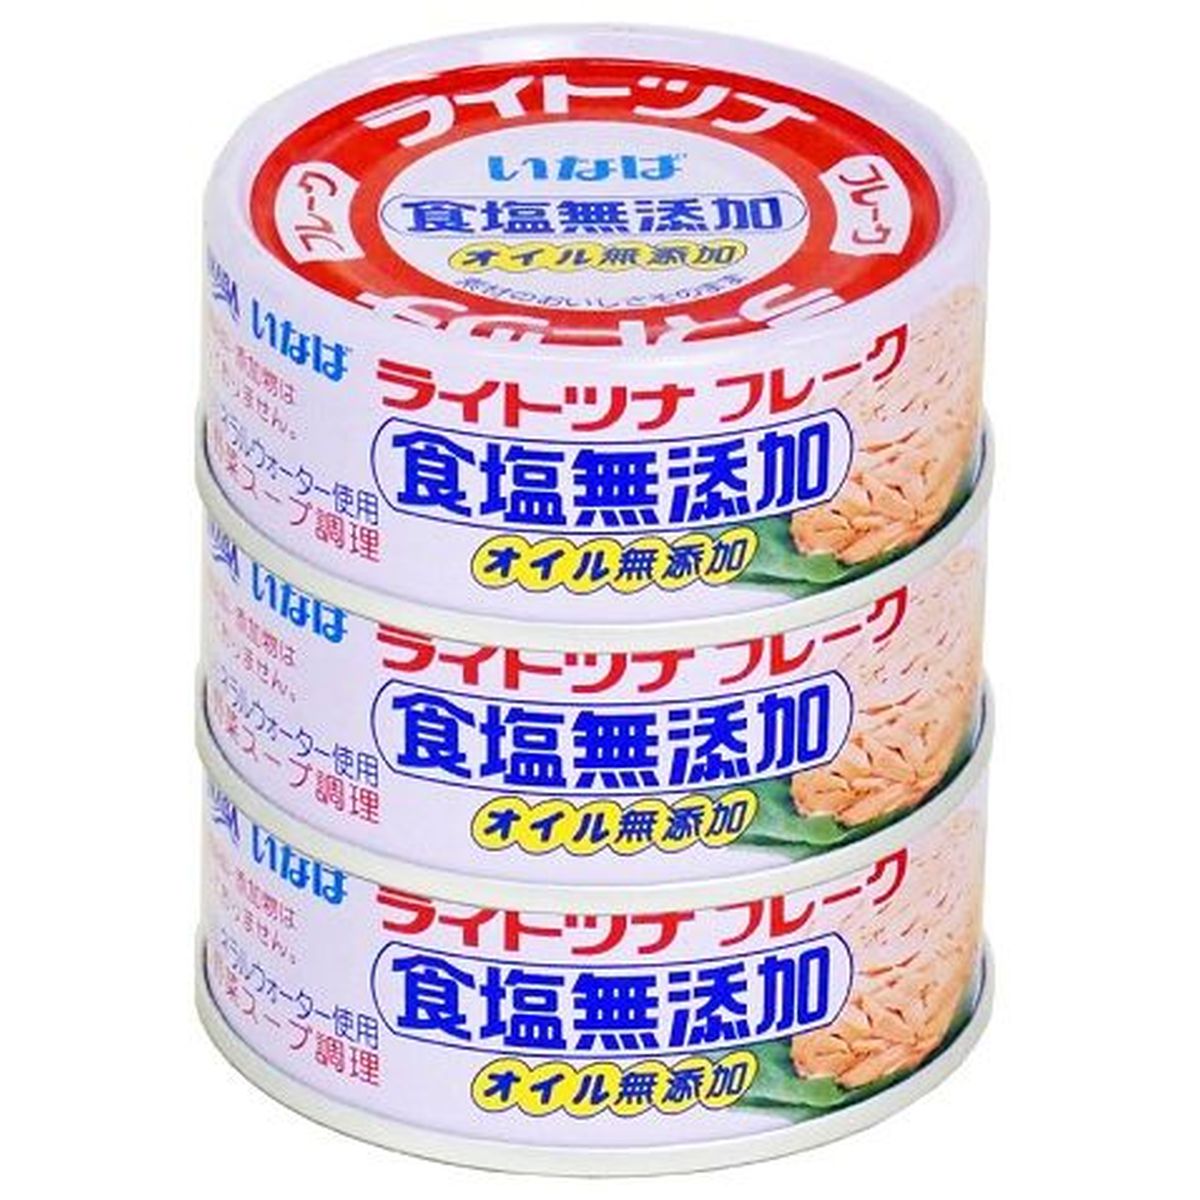 【15個入リ】イナバ ライトツナ 食塩無添加 タイ産 70g